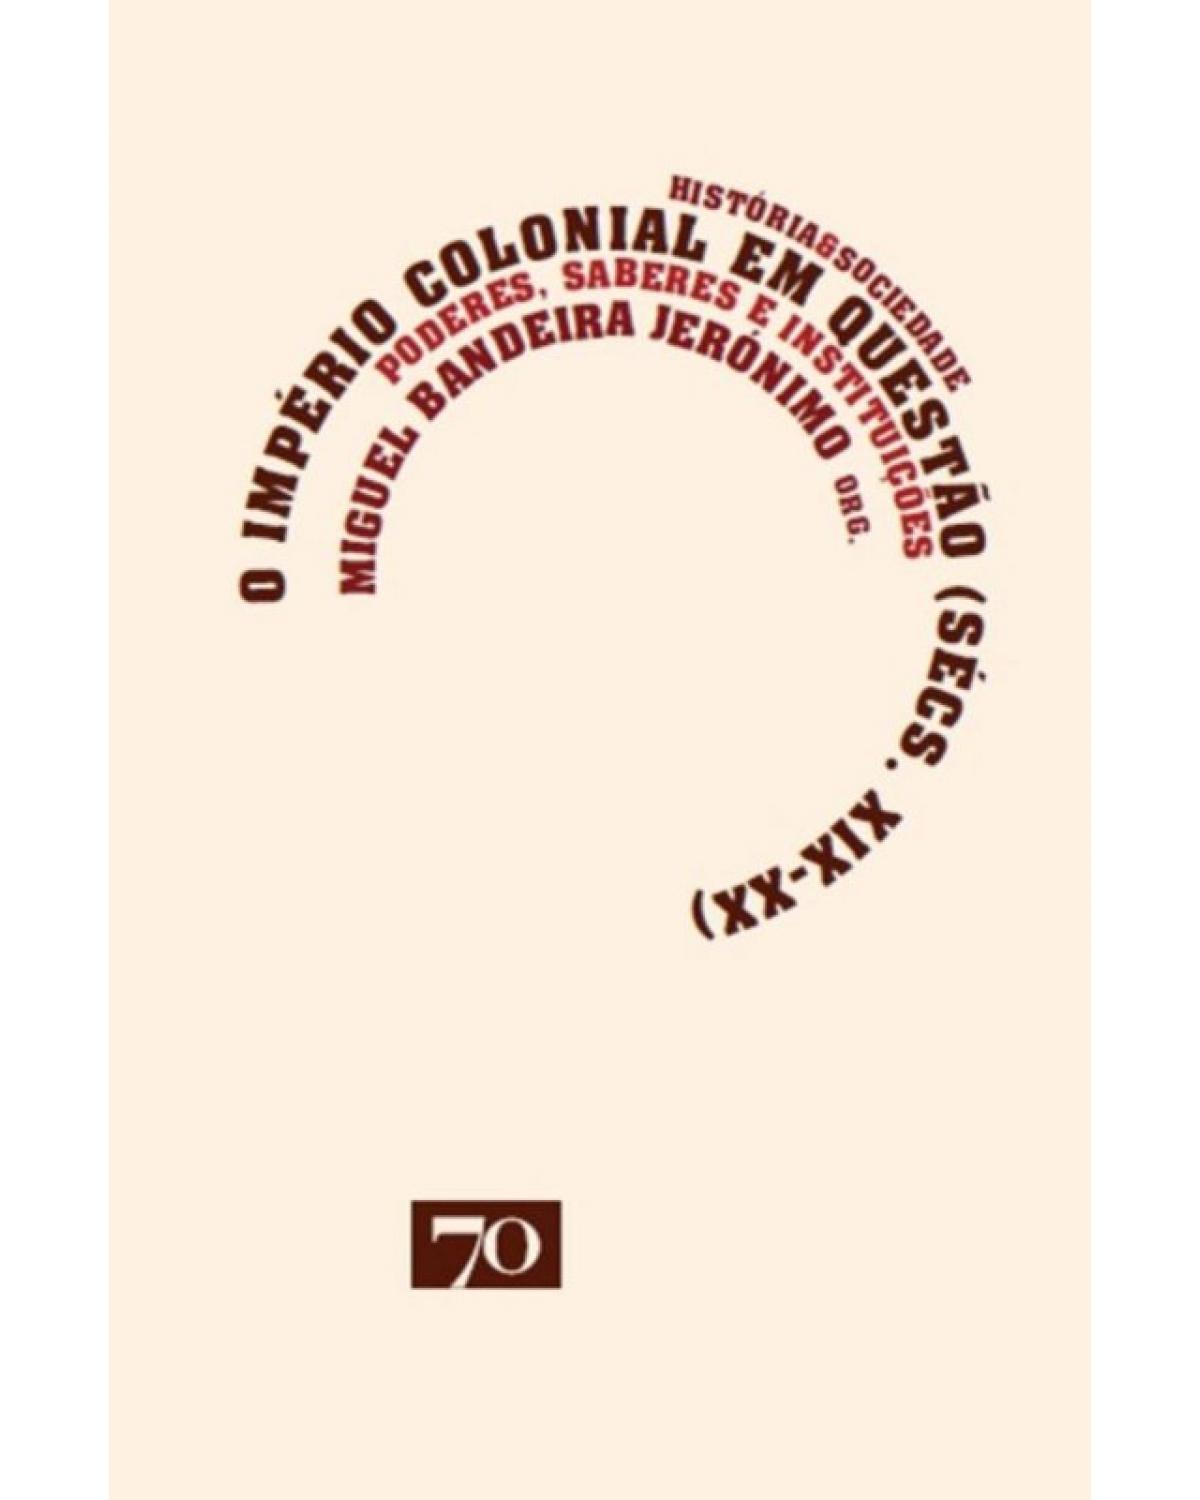 O império colonial em questão (sécs. XIX-XX) - poderes, saberes e instituições - 1ª Edição | 2013